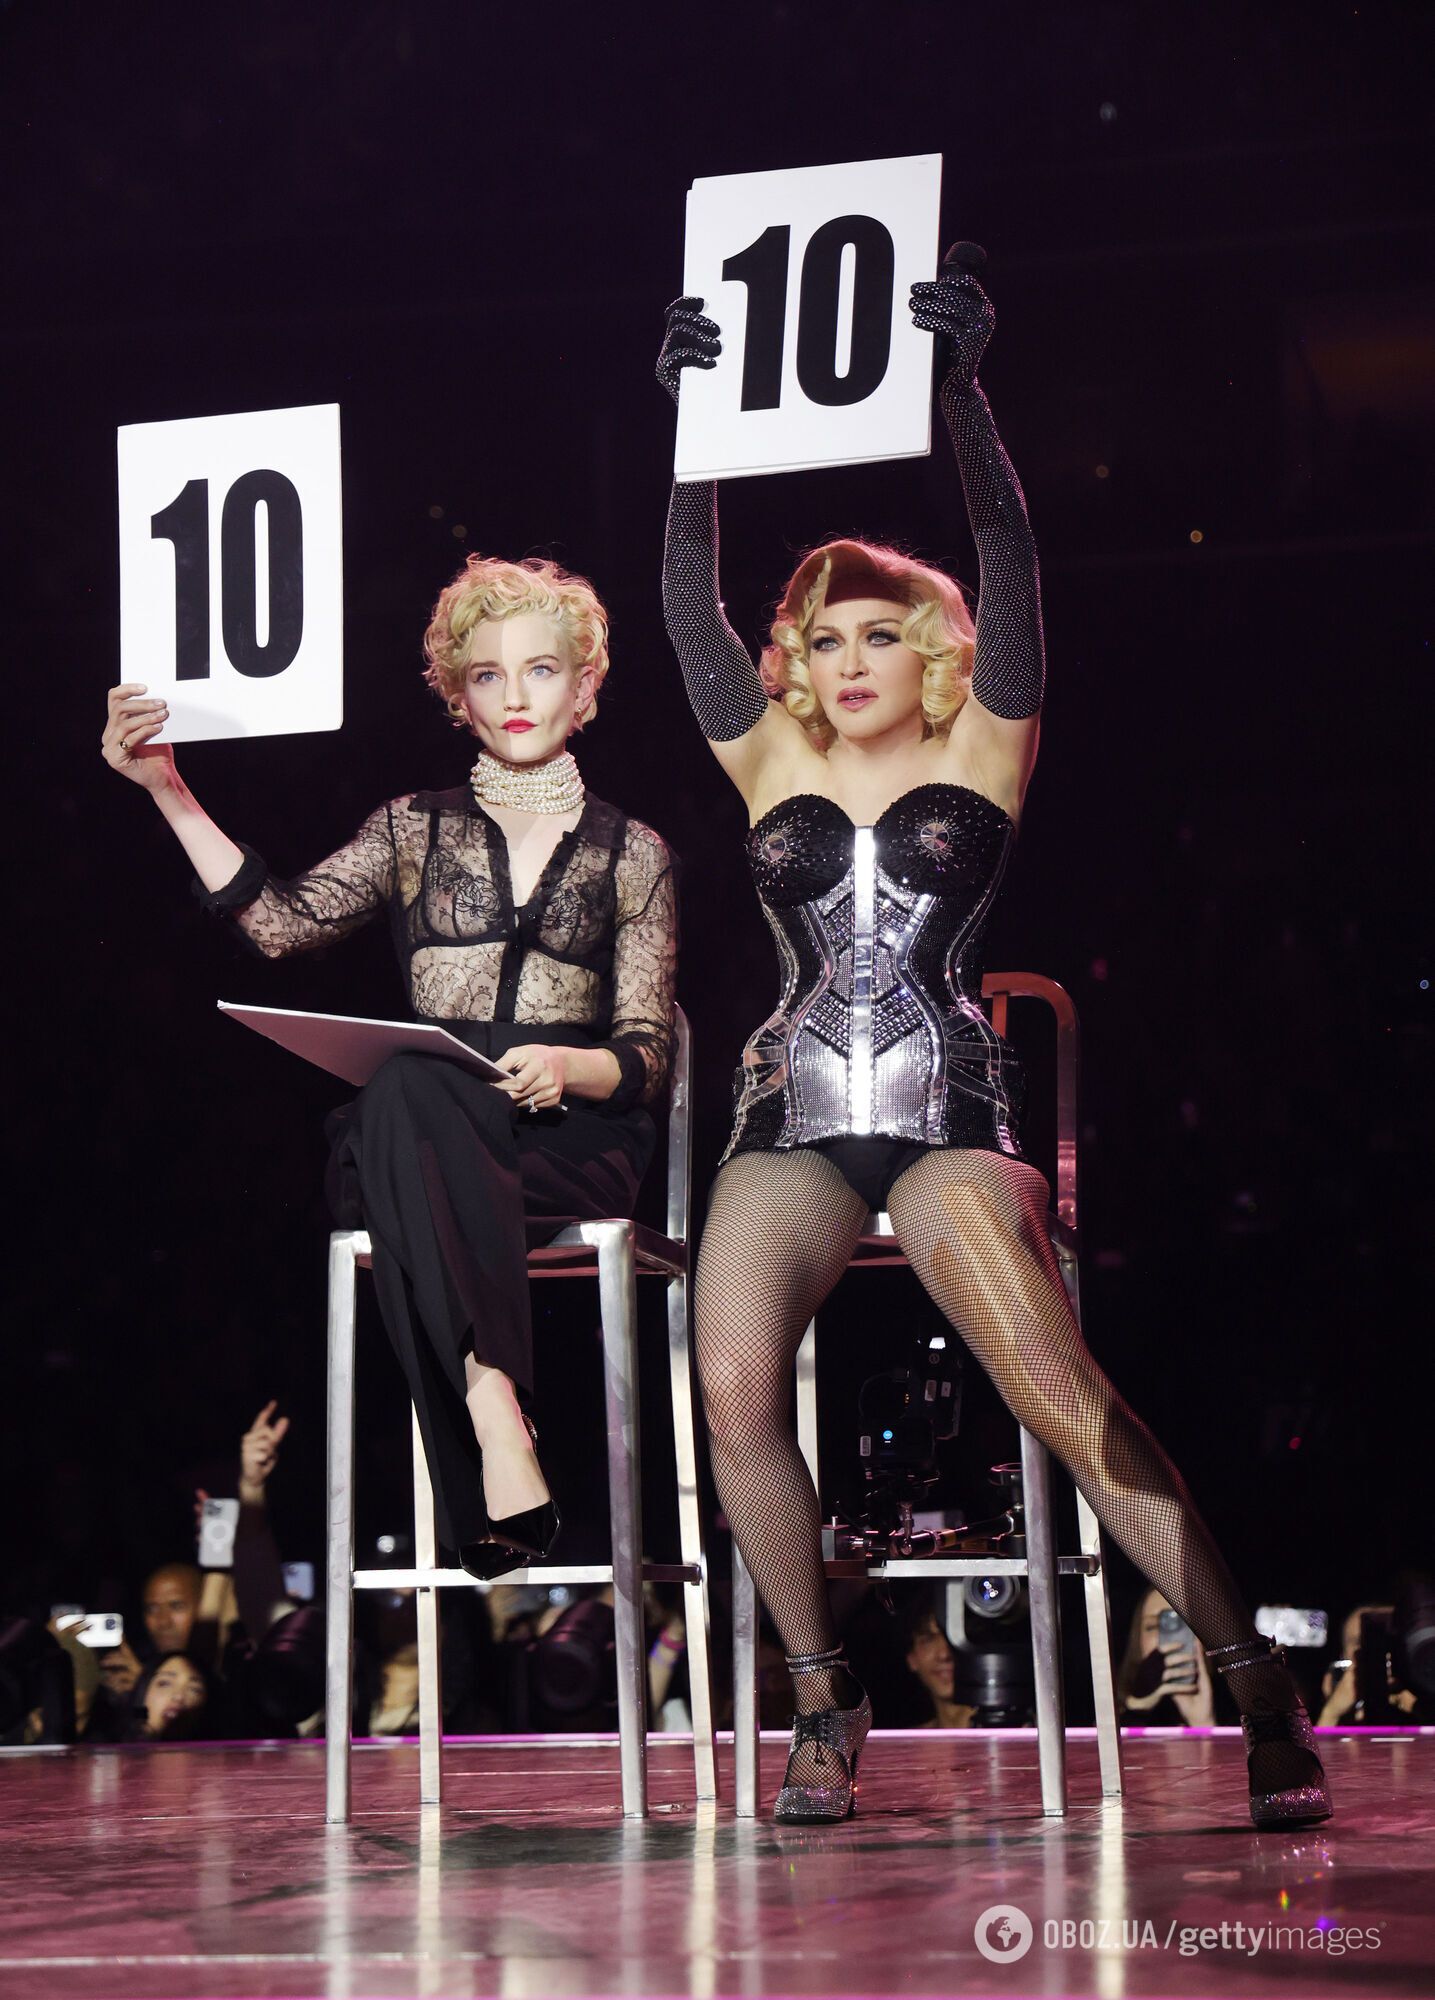 Мадонну уронили на сцене во время концерта в Сиэтле: певица эффектно "выкрутилась". Видео